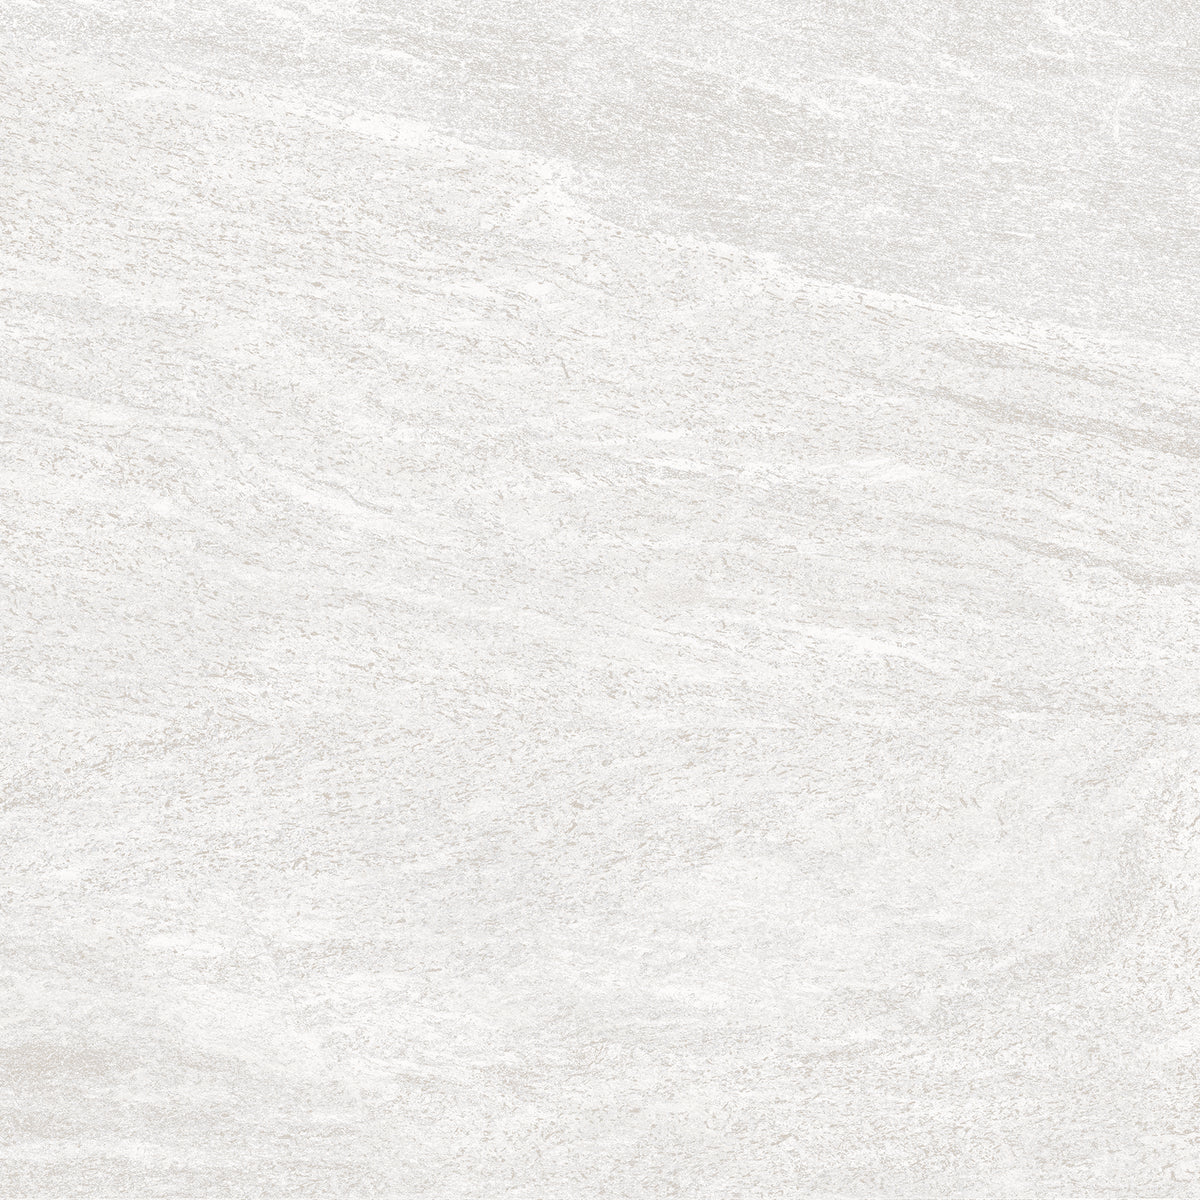 Light Grey 600mm x 600mm Bianco Imperial Matt Porcelain Floor Tiles